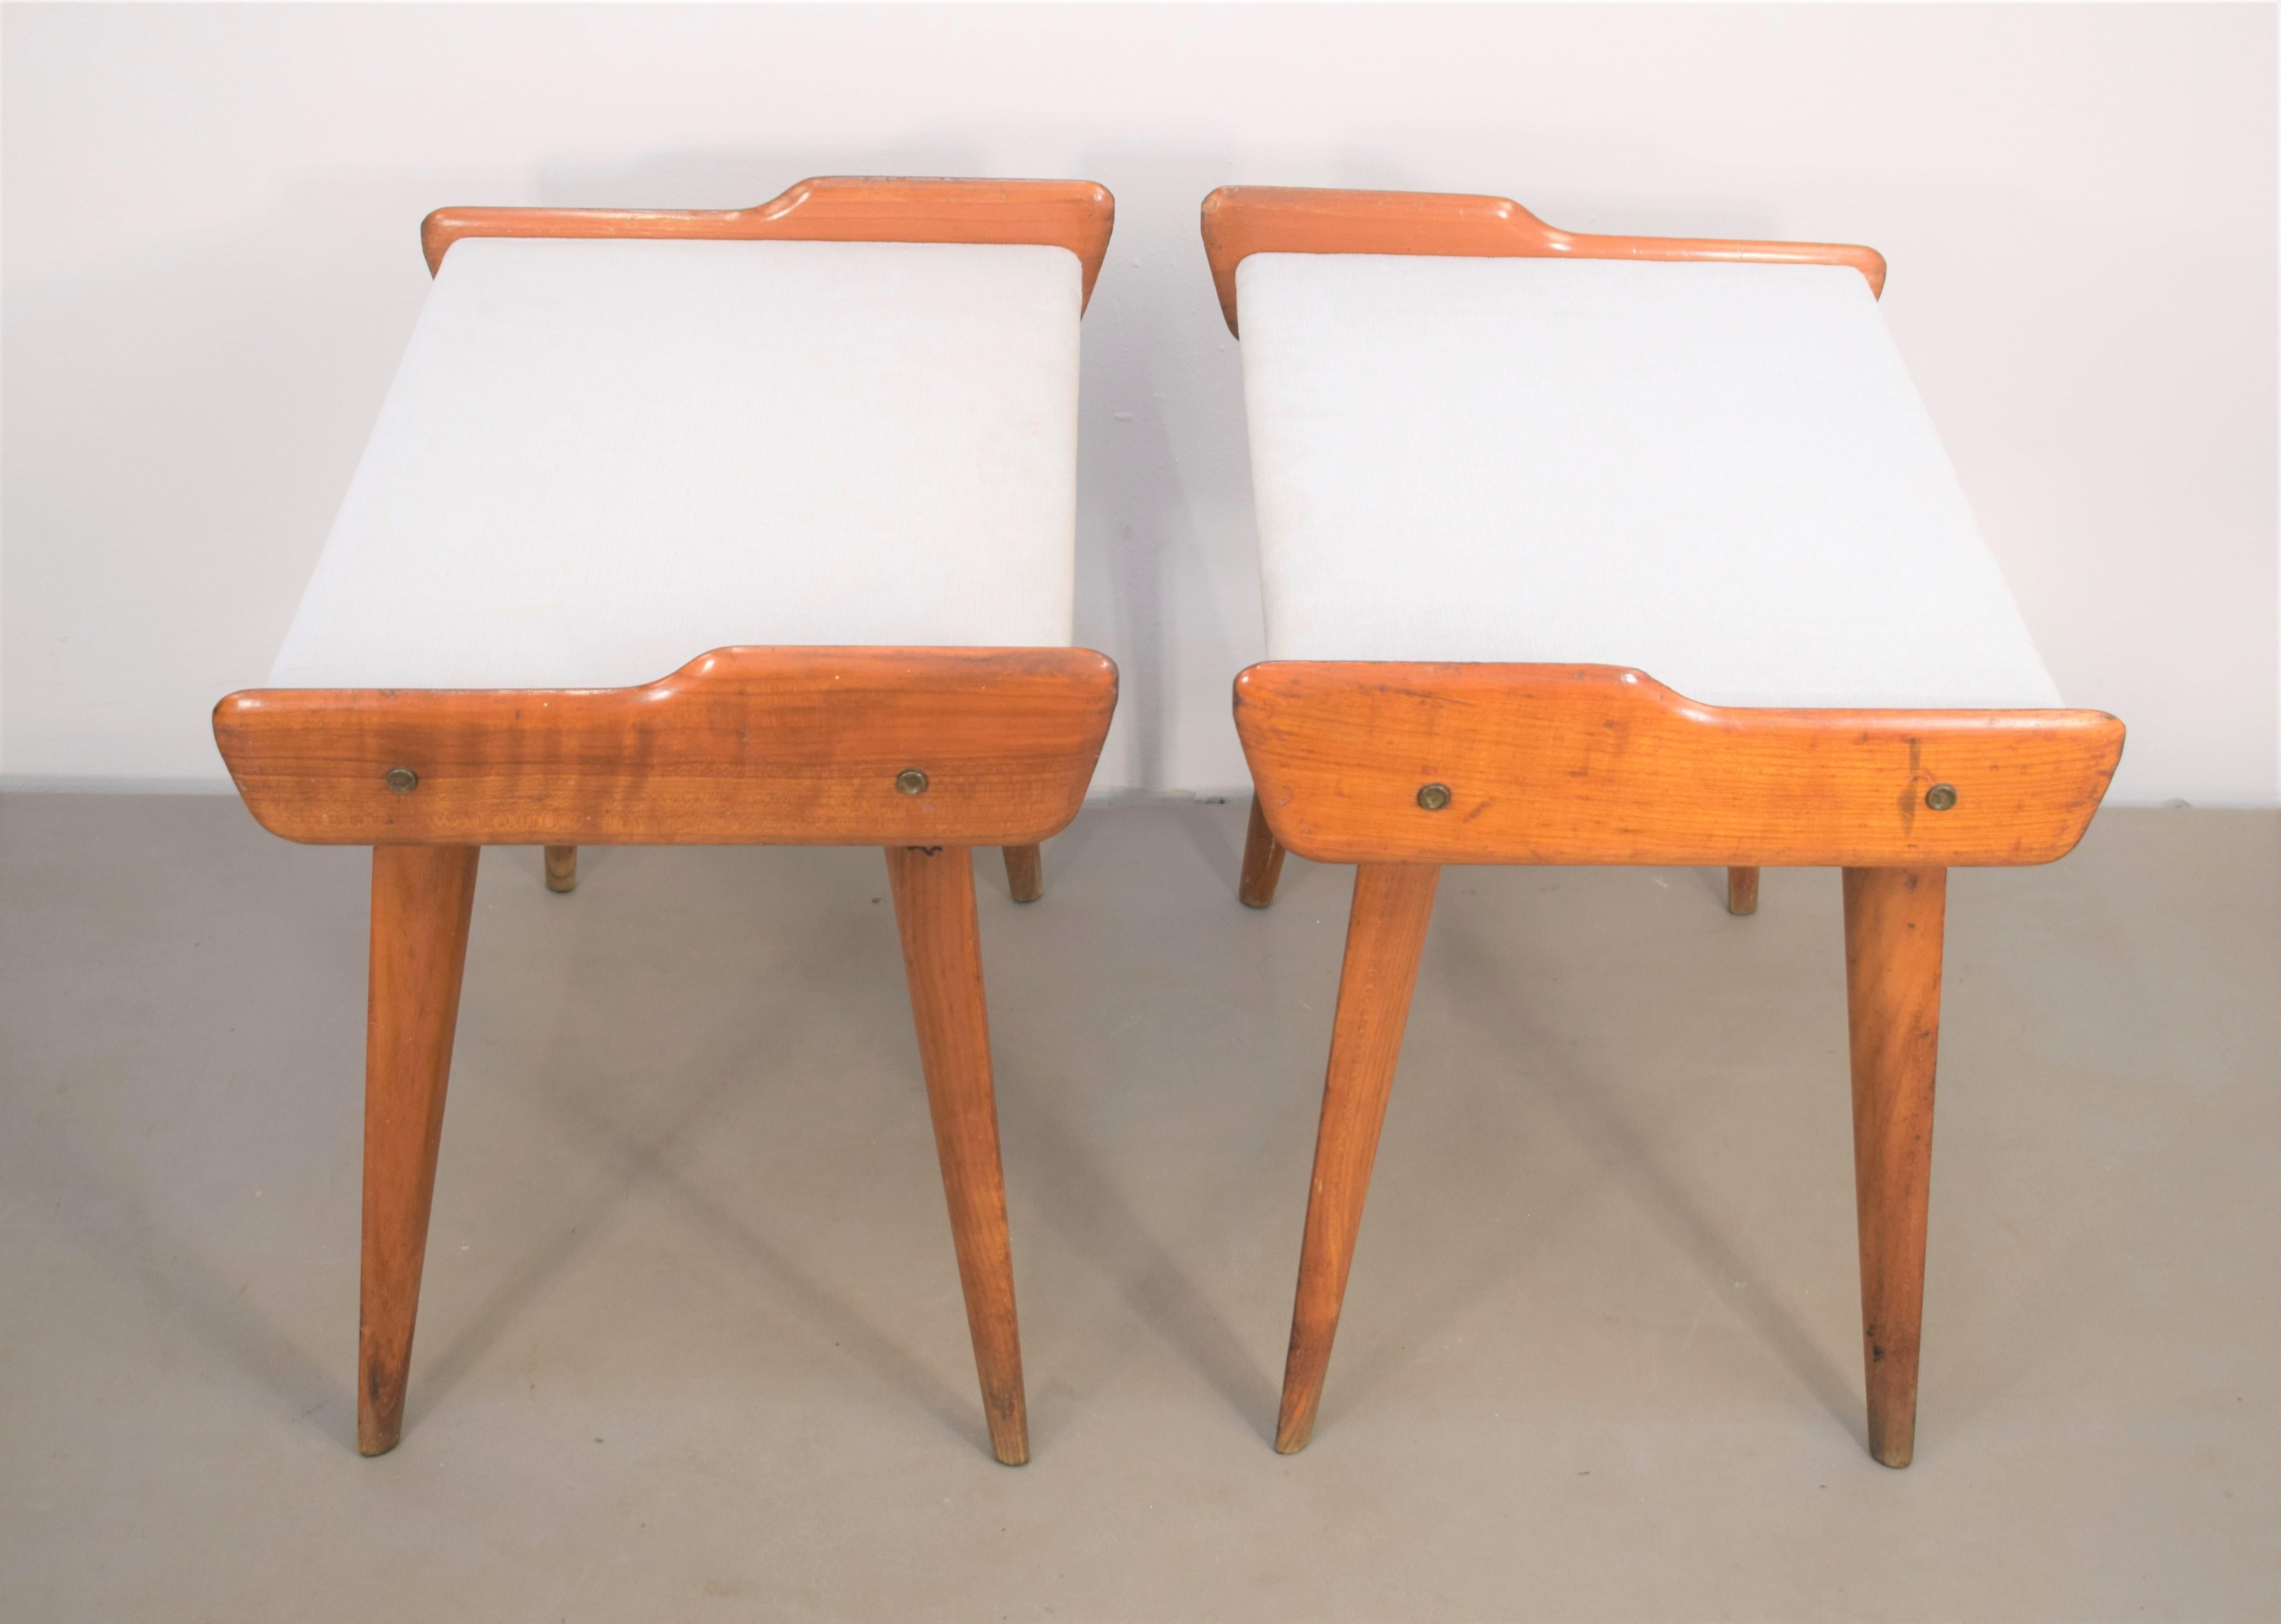 Pair of Italian stools, 1950s.

Dimensions: H= 42 cm; W= 55 cm; D= 38 cm.